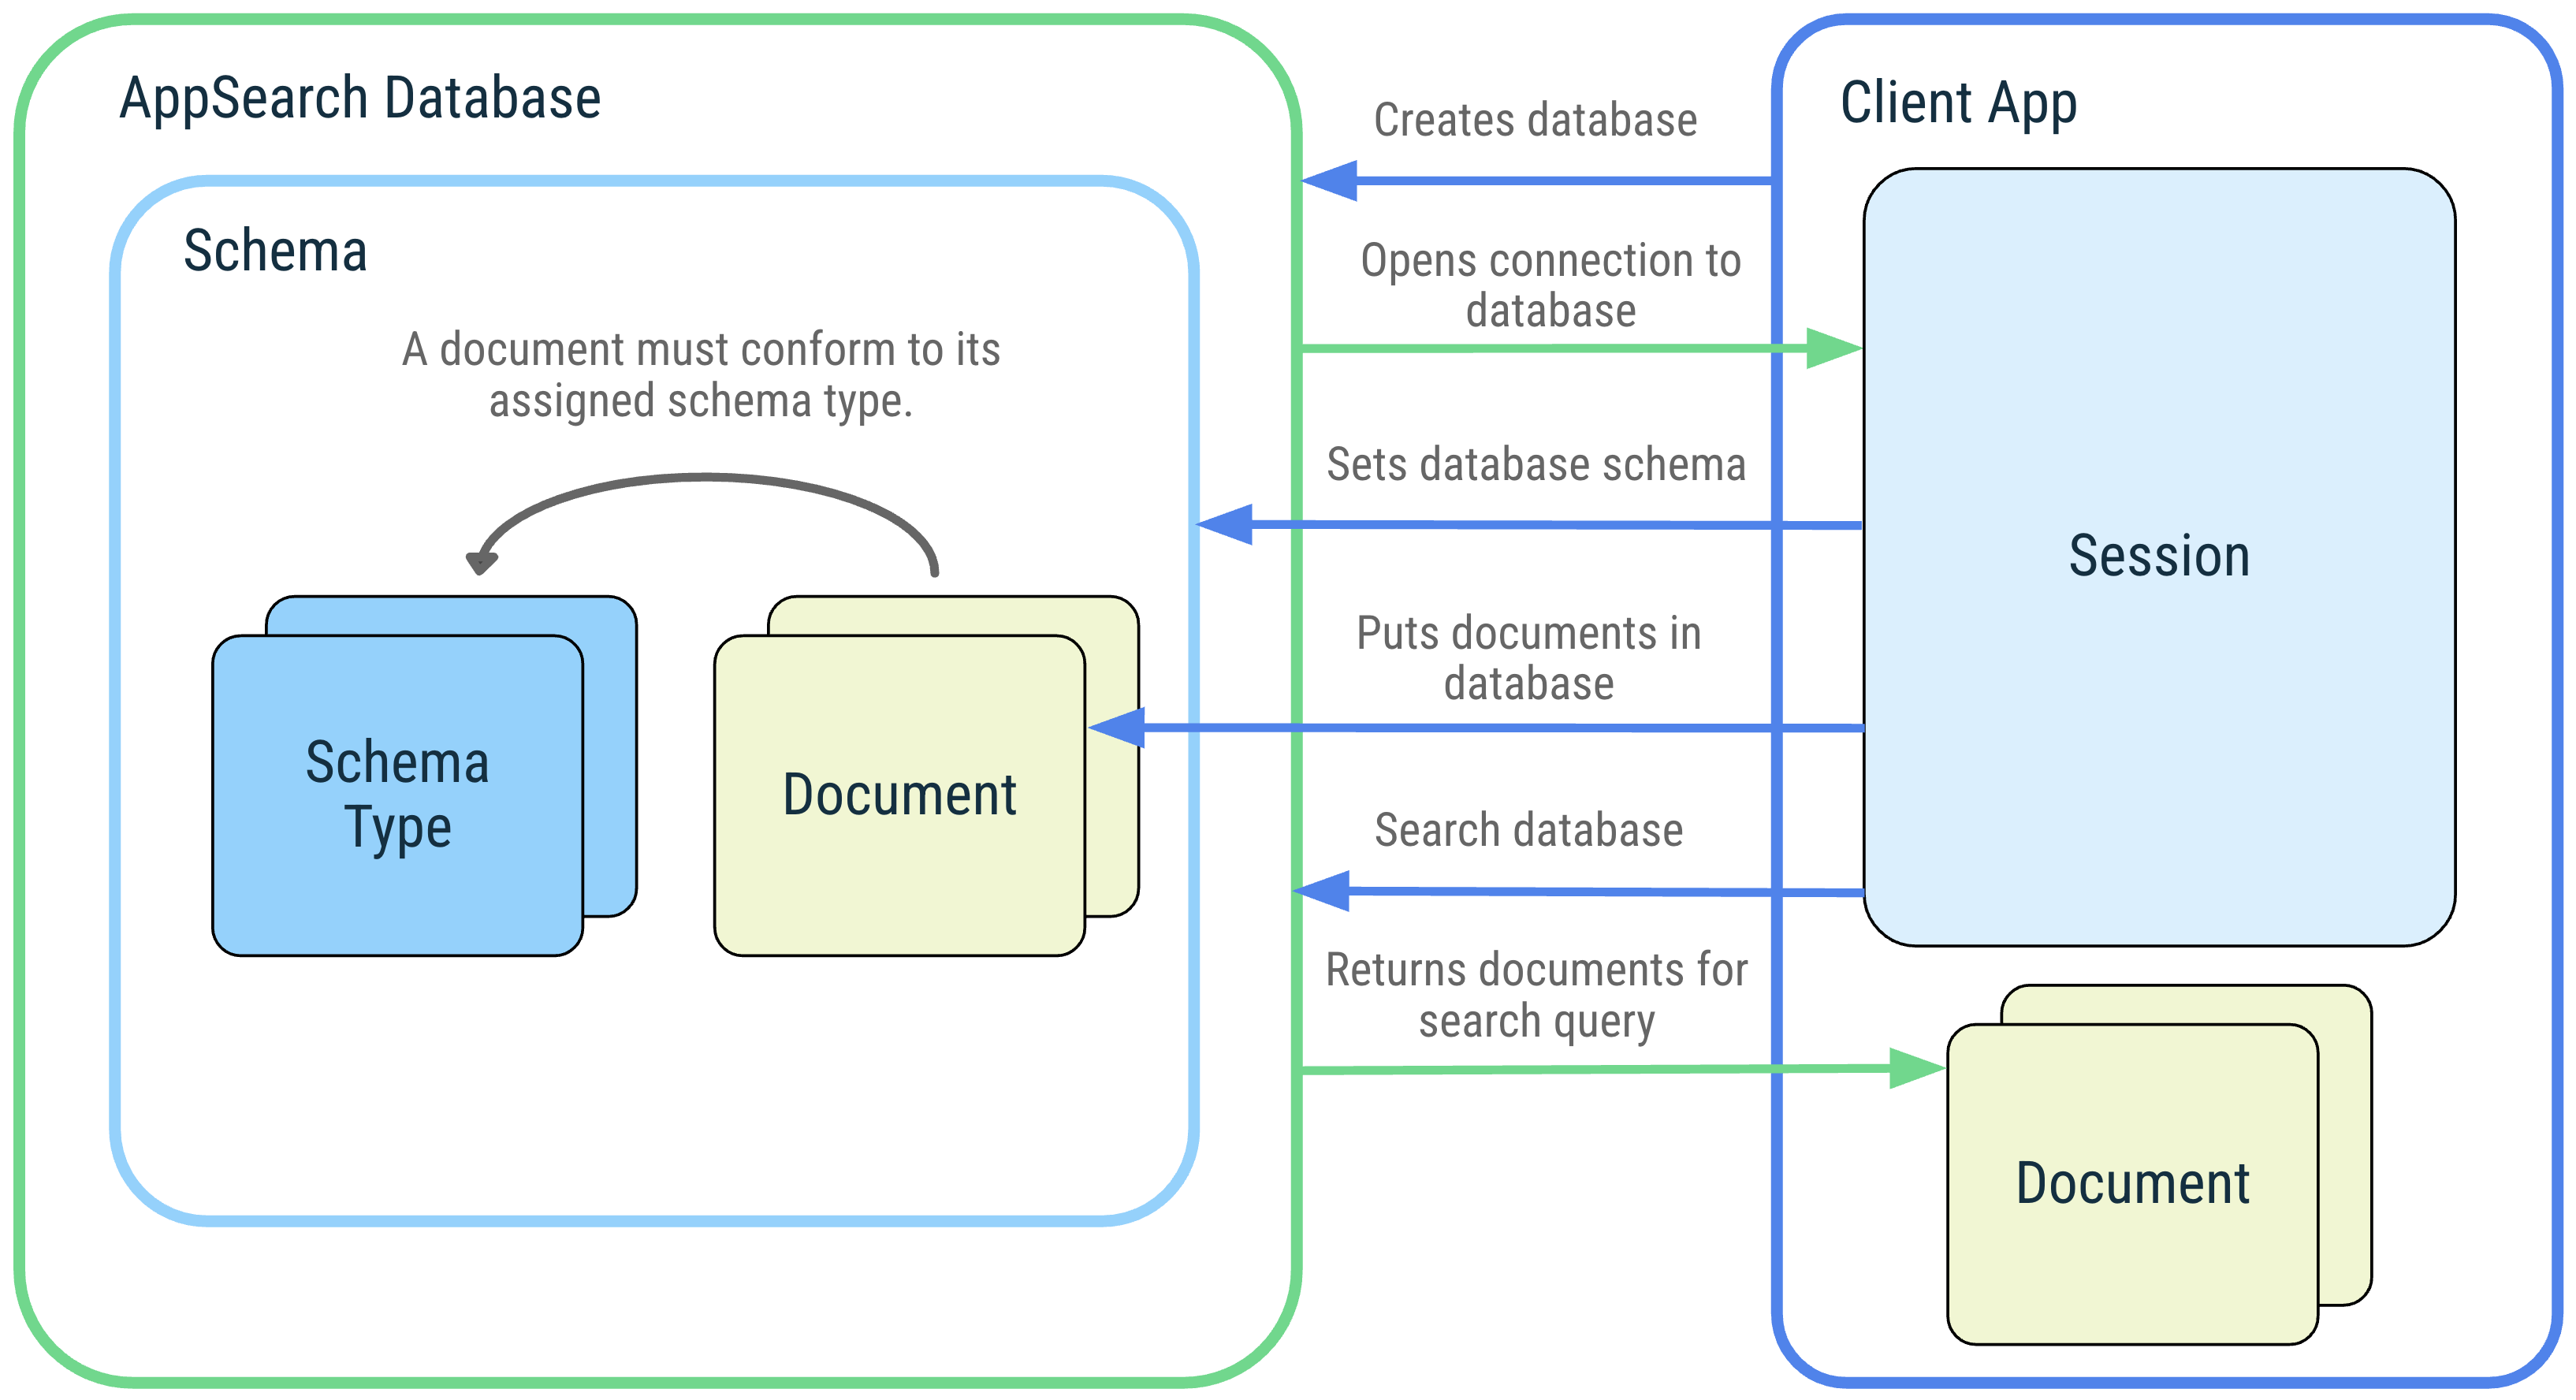 客户端应用及其与以下 AppSearch 概念的交互的示意图：AppSearch 数据库、架构、架构类型、文档、会话和搜索。